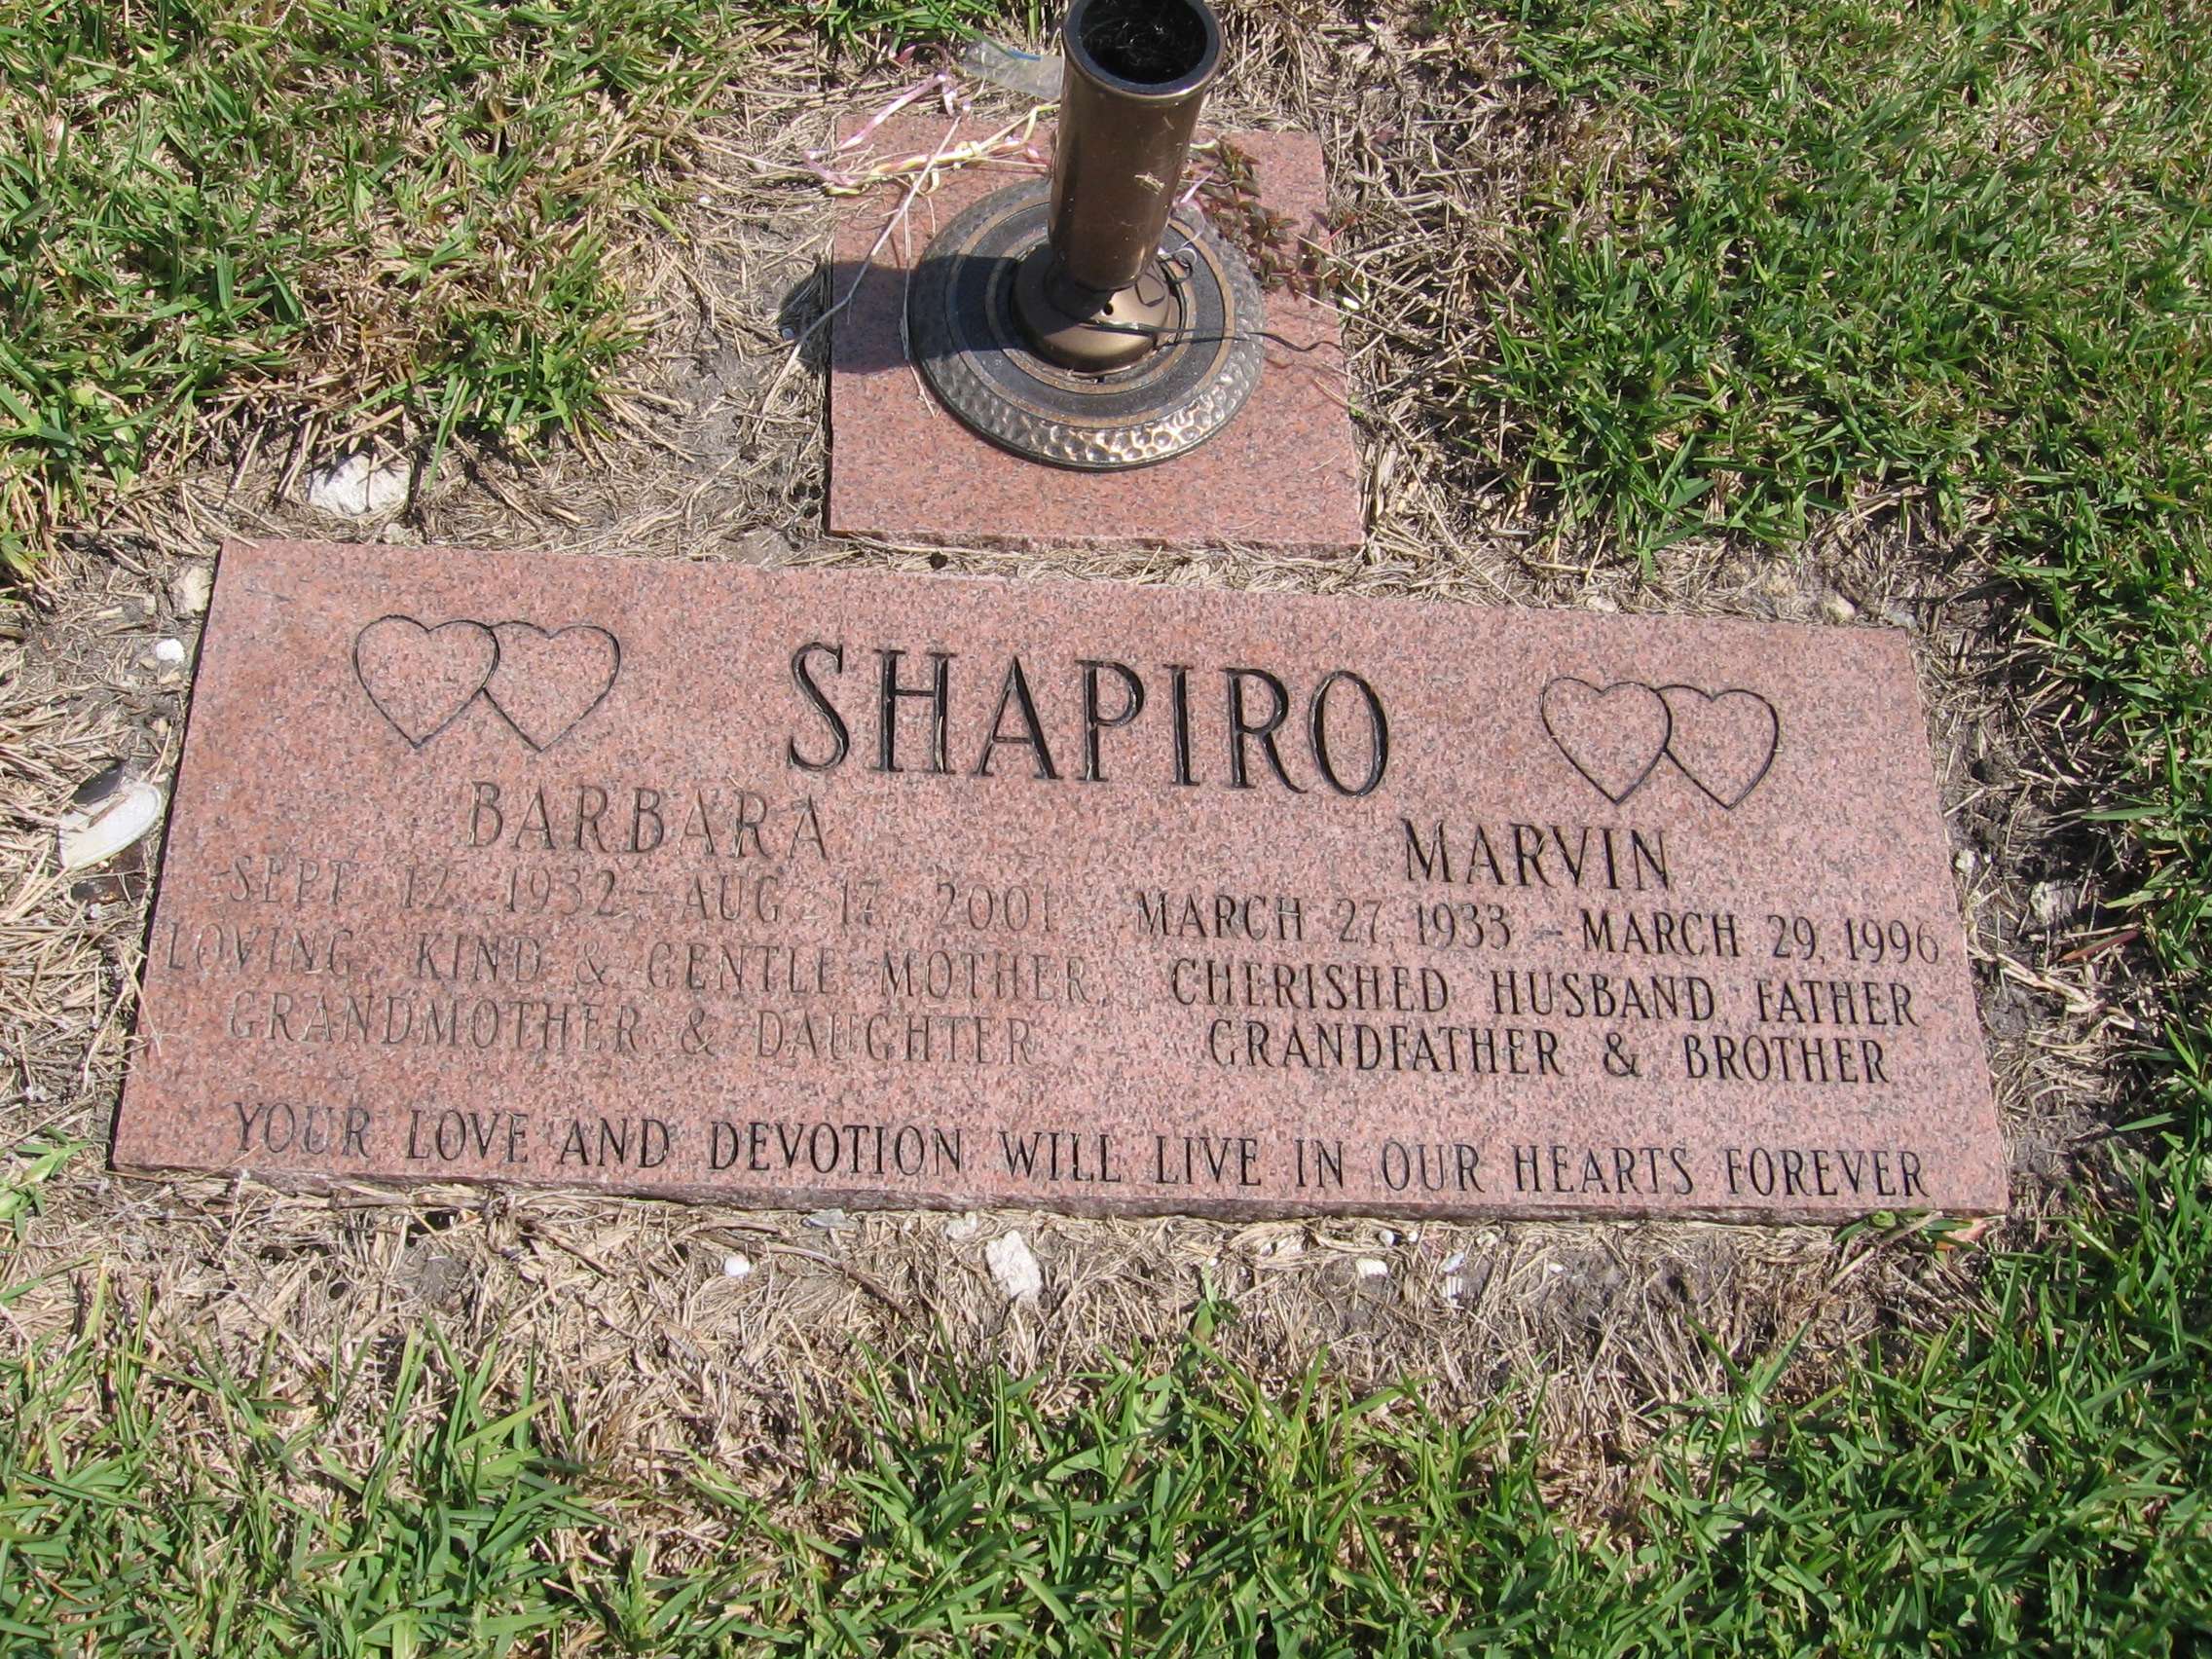 Marvin Shapiro